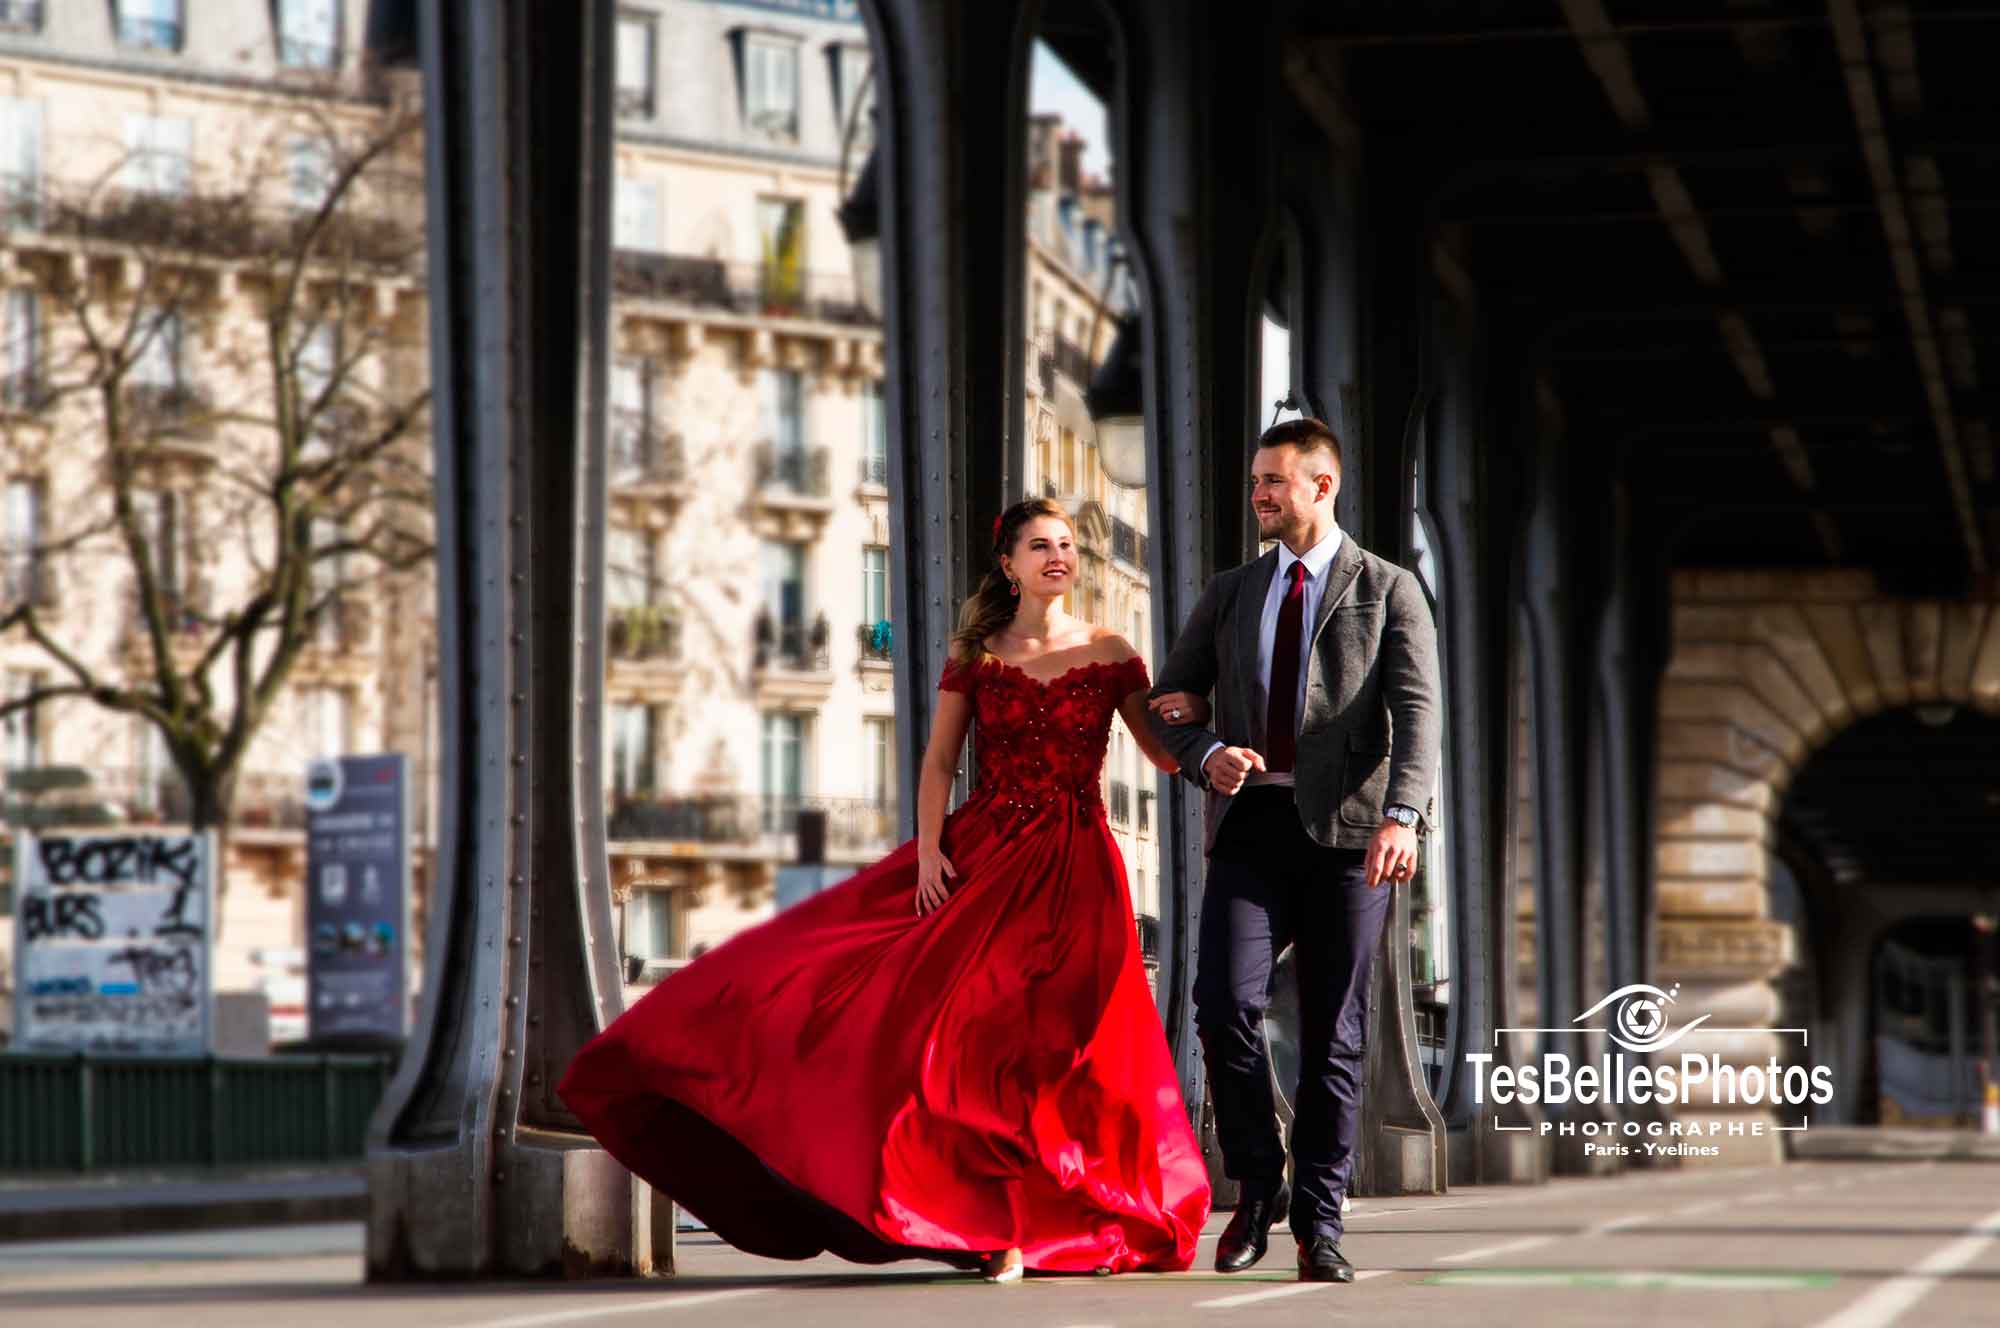 Tarifs photographe mariage Paris, forfait tarif prix de photographe pour reportage photo de mariage à Paris